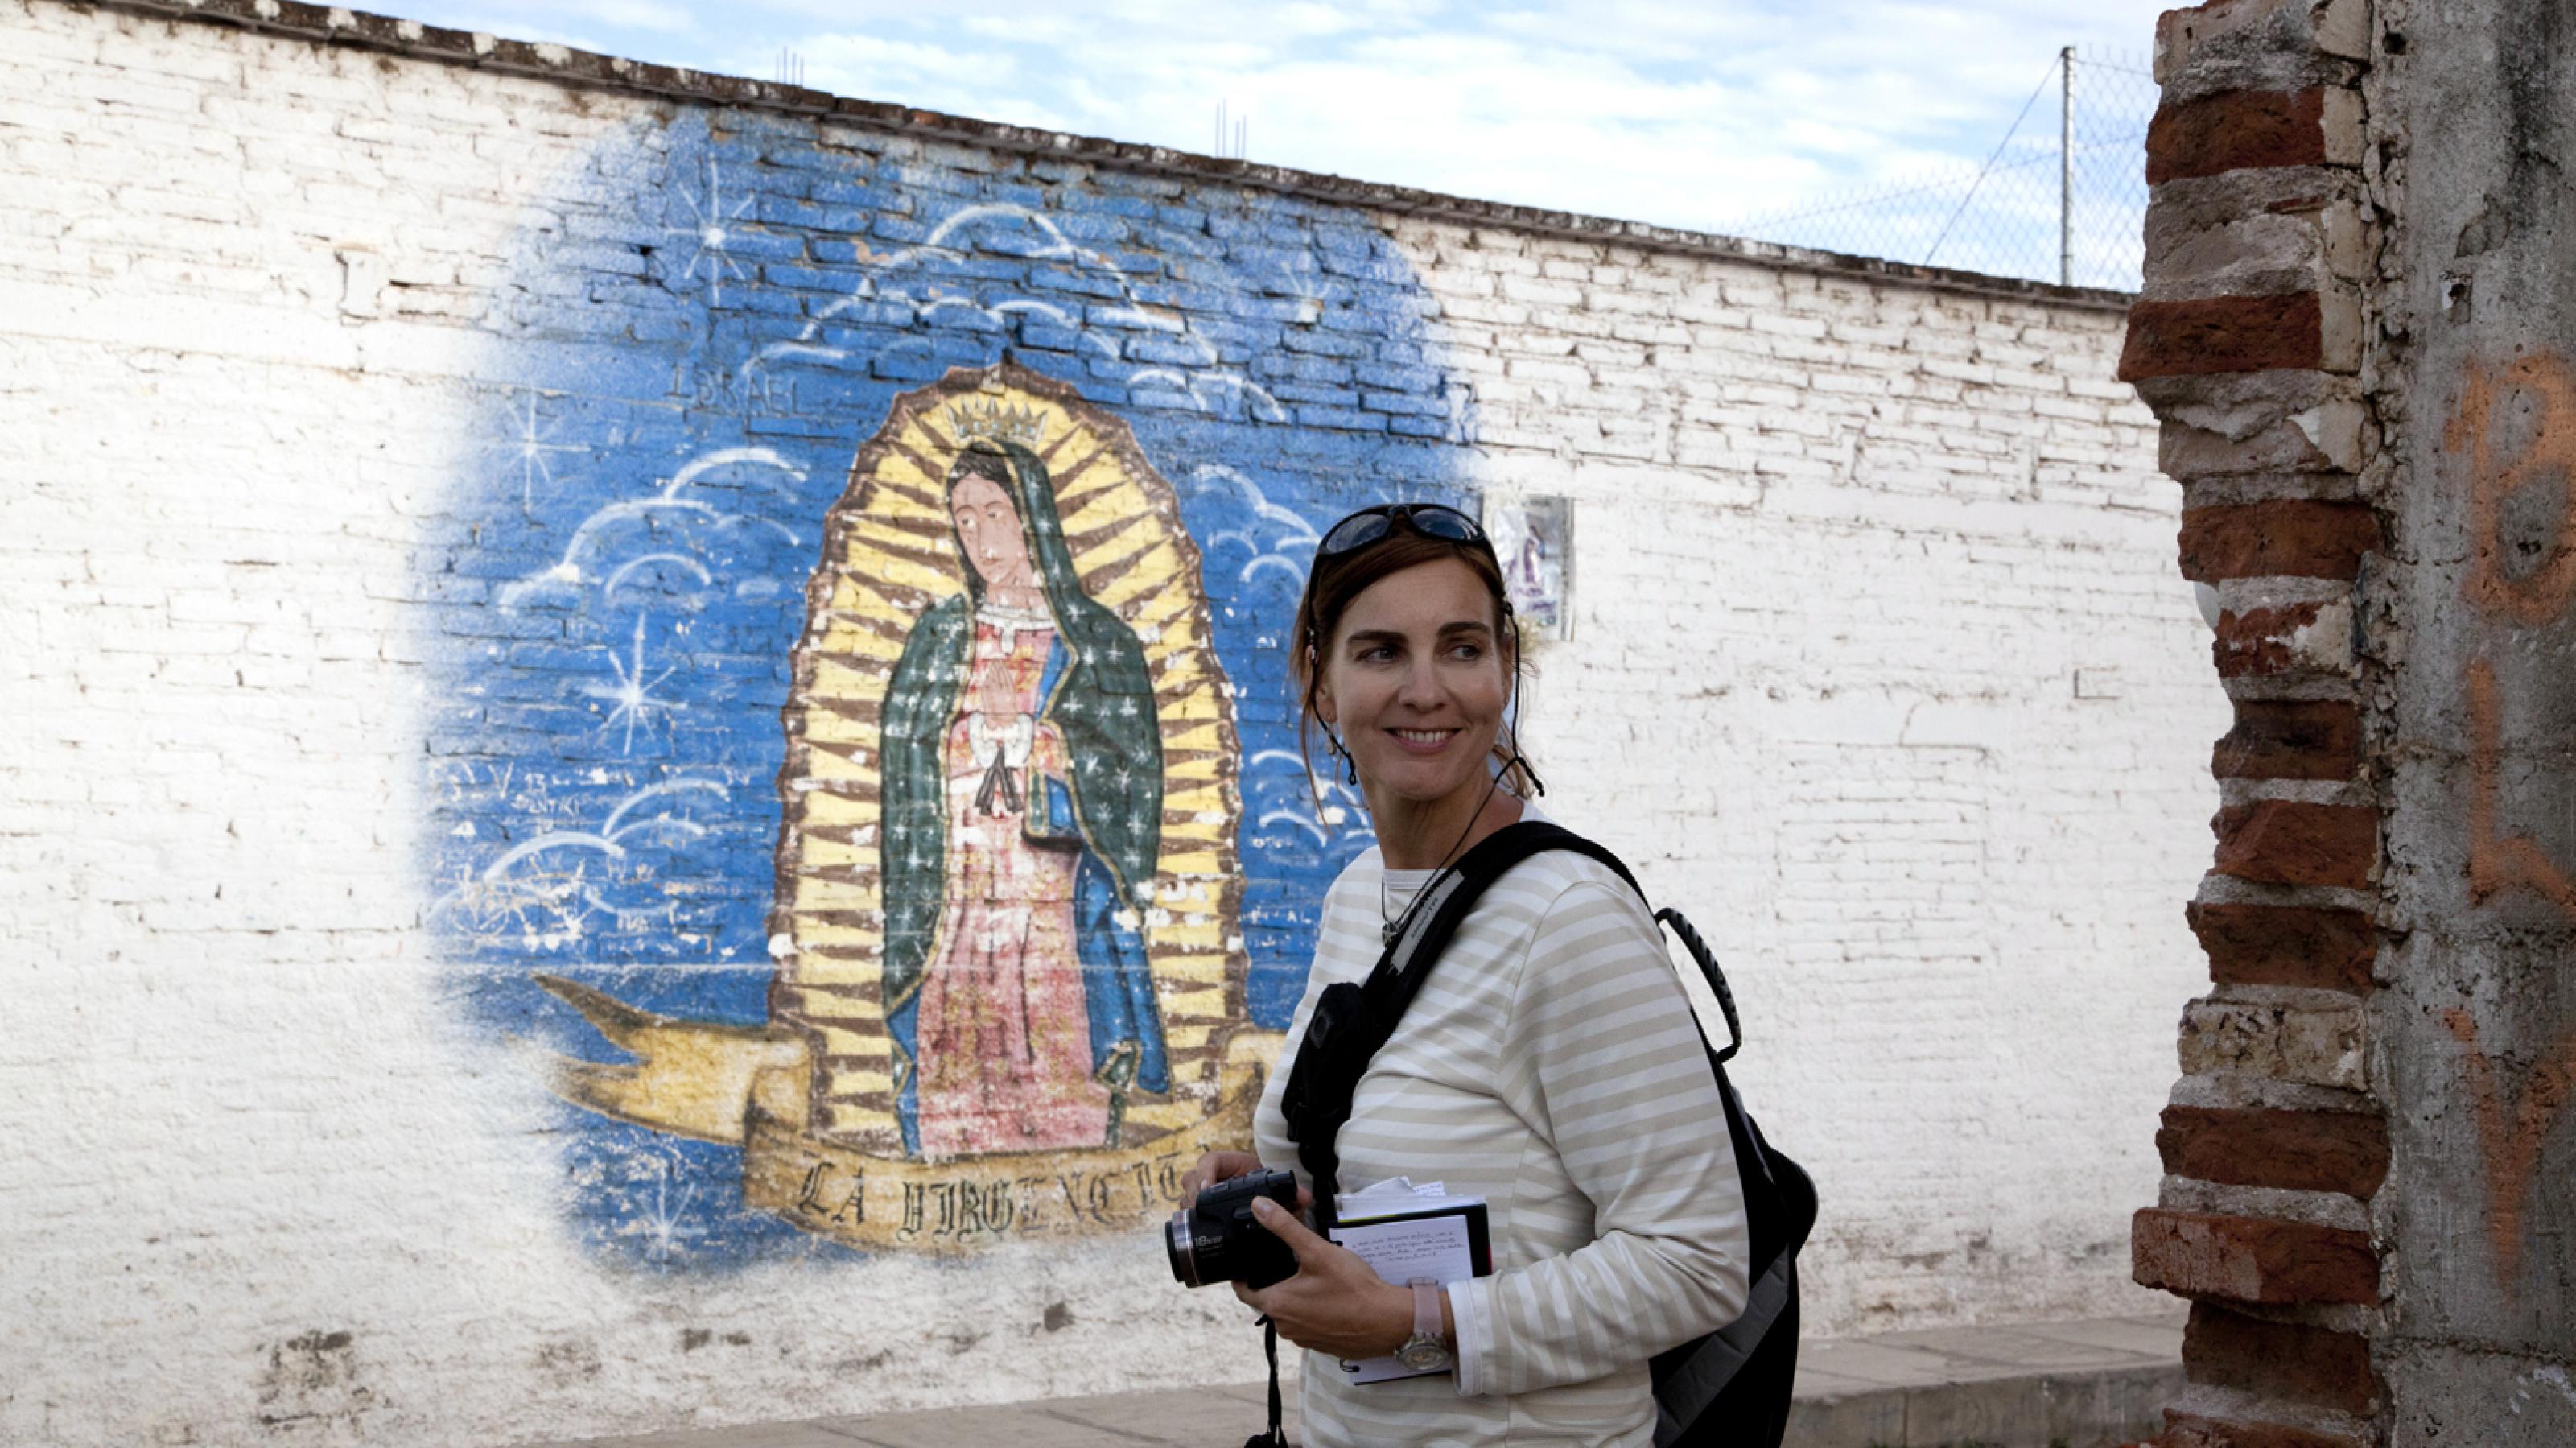 Sandra Weiss mit Fotoausrüstung vor einer mit Graffiti bemalten Wand in Mexiko.